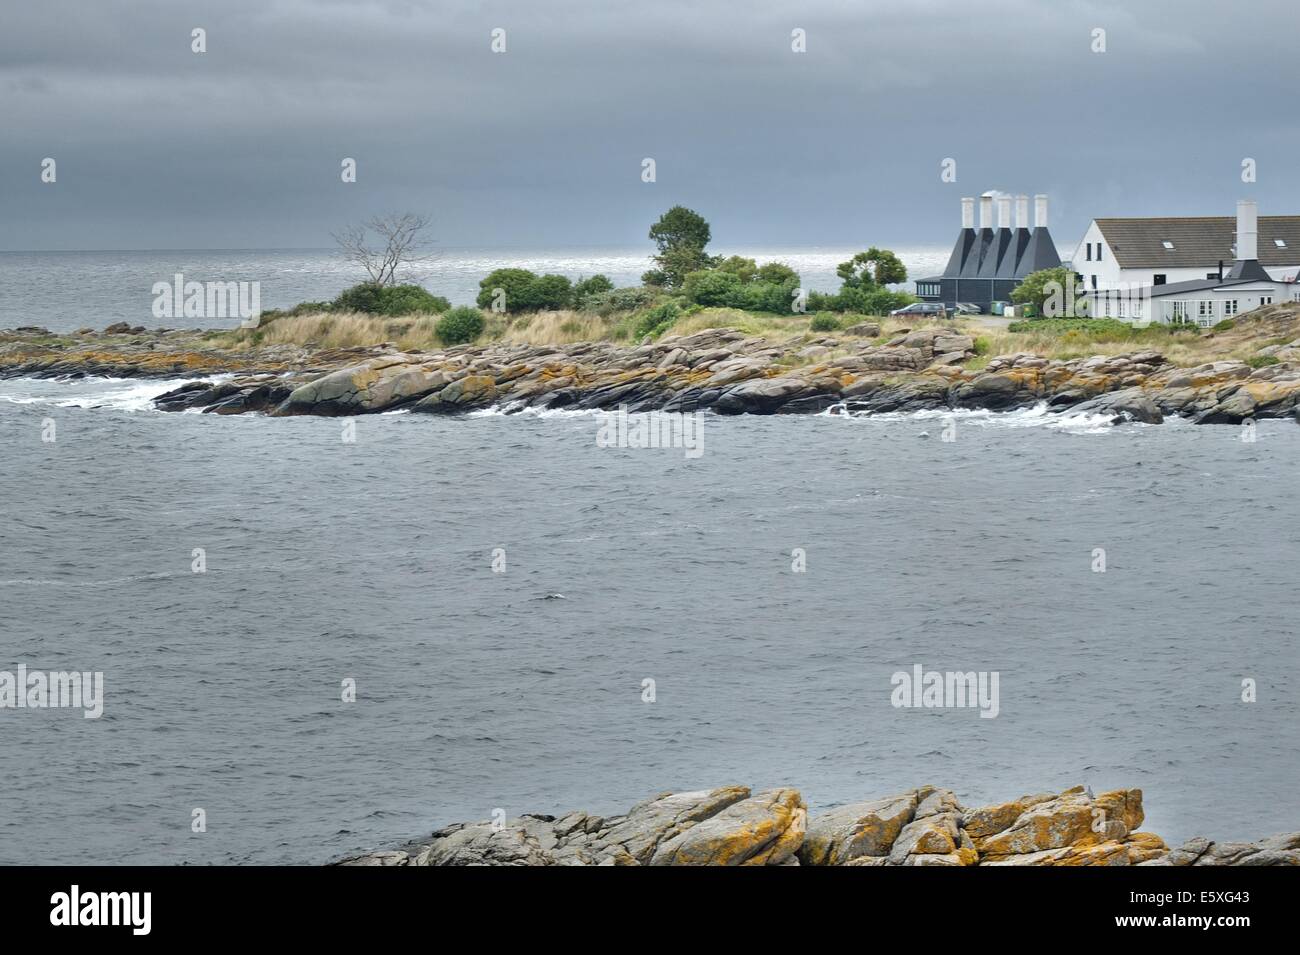 Dinamarca, la isla de Bornholm fotografías tomadas entre el 1 y el 5 de agosto de 2014. Foto: Arenque smokehouse en la ciudad Svaneke Foto de stock